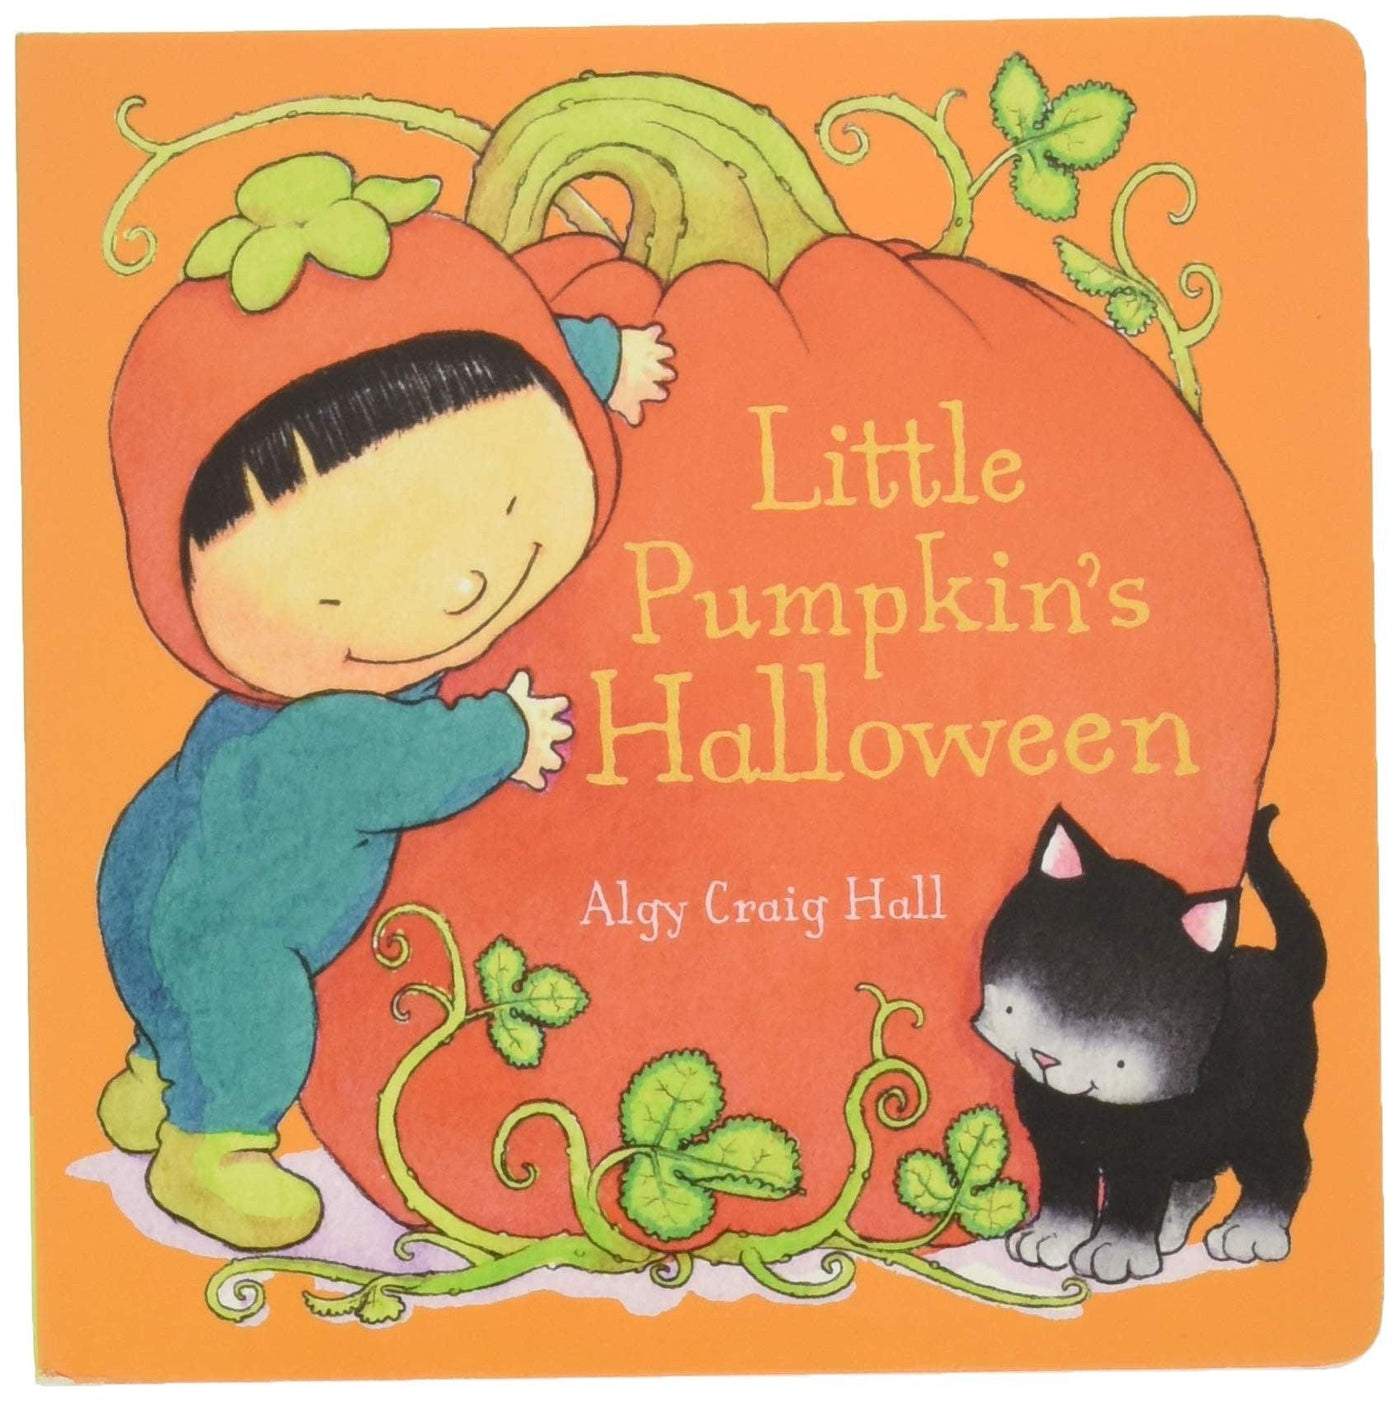 Little Pumpkin's Halloween